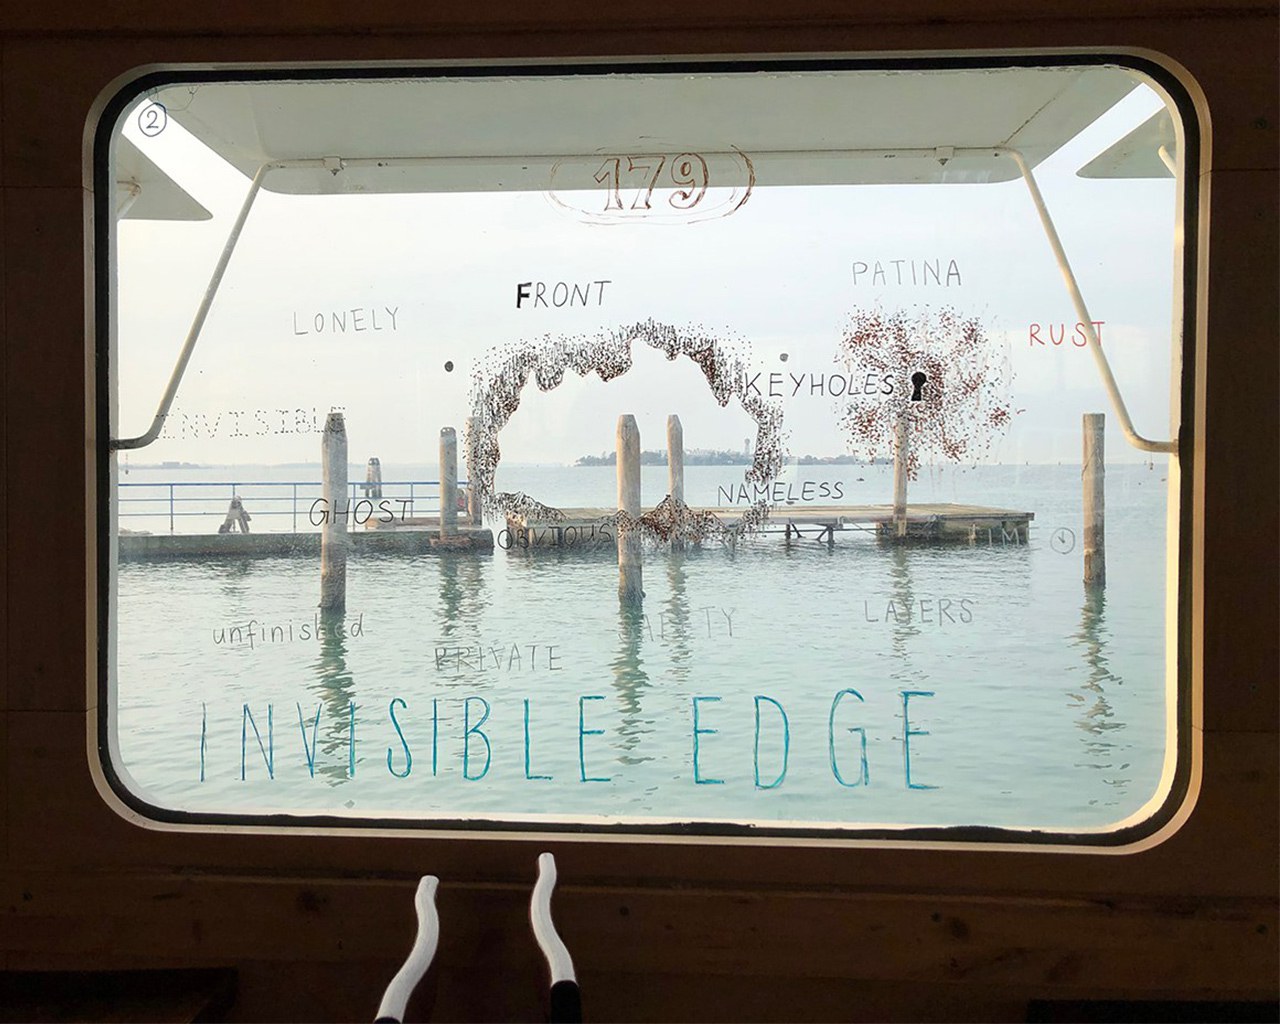 Window of a vaporetto in Venice